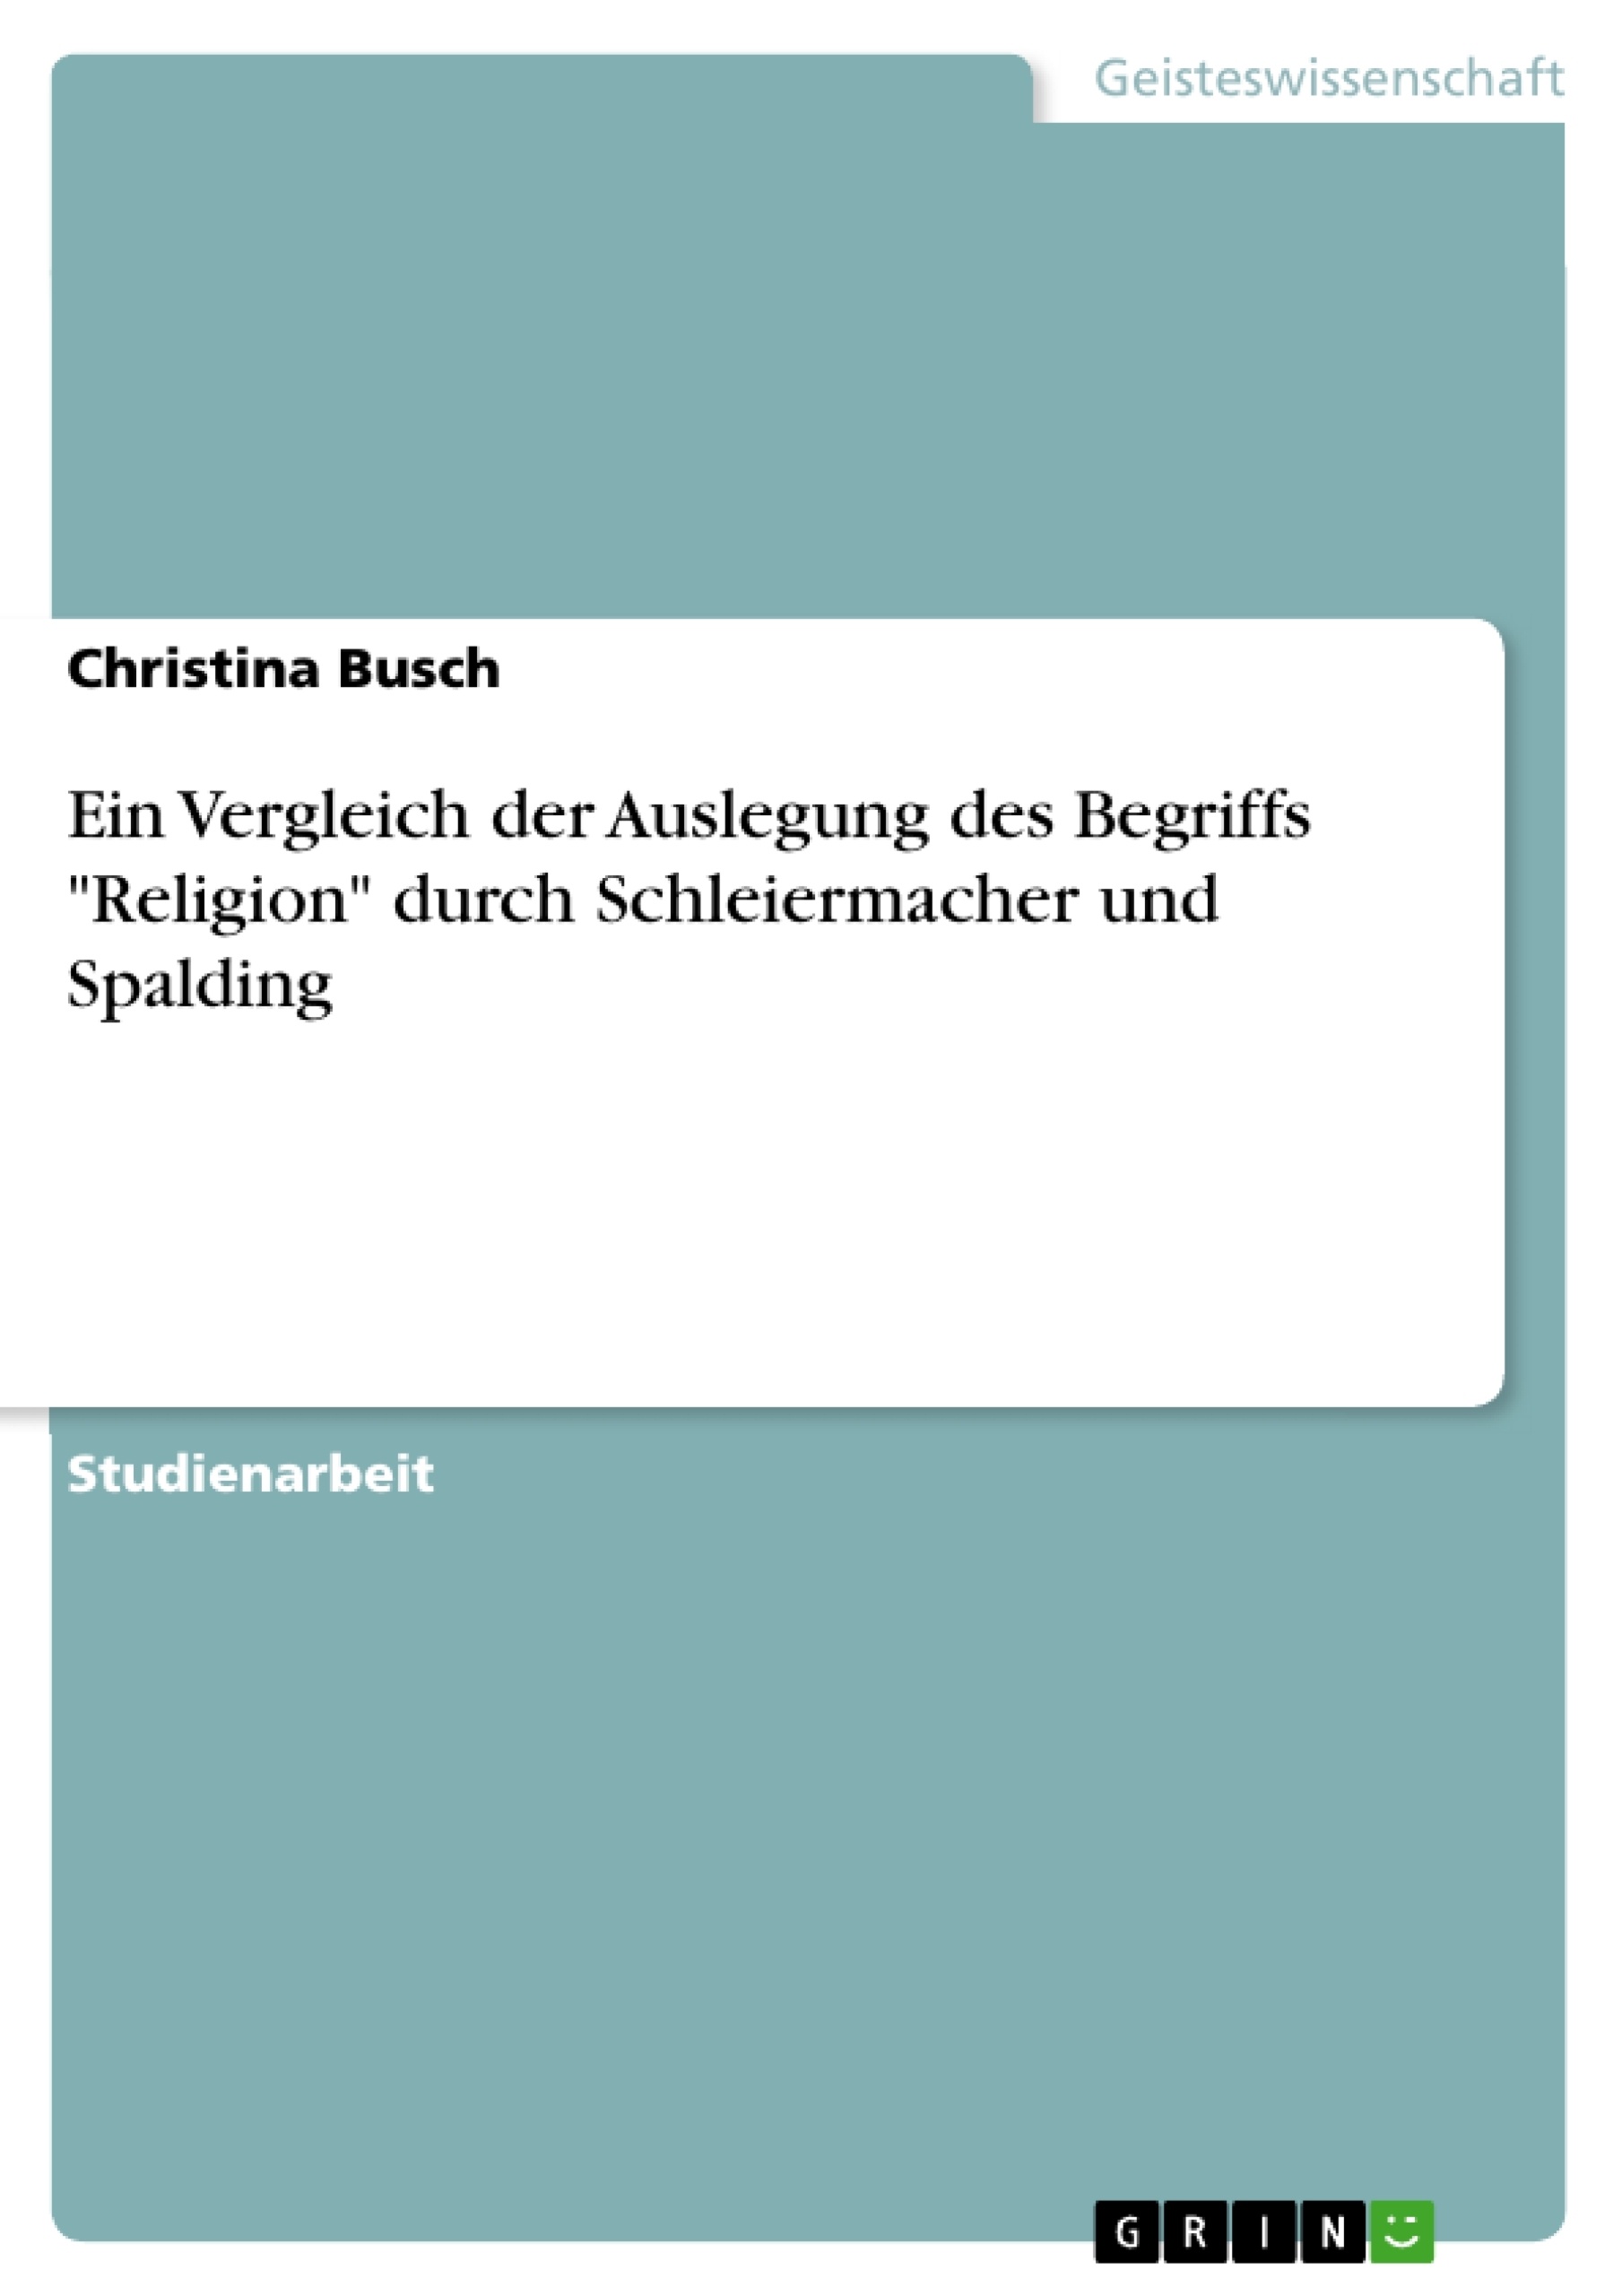 Titel: Ein Vergleich der Auslegung des Begriffs "Religion" durch Schleiermacher und Spalding